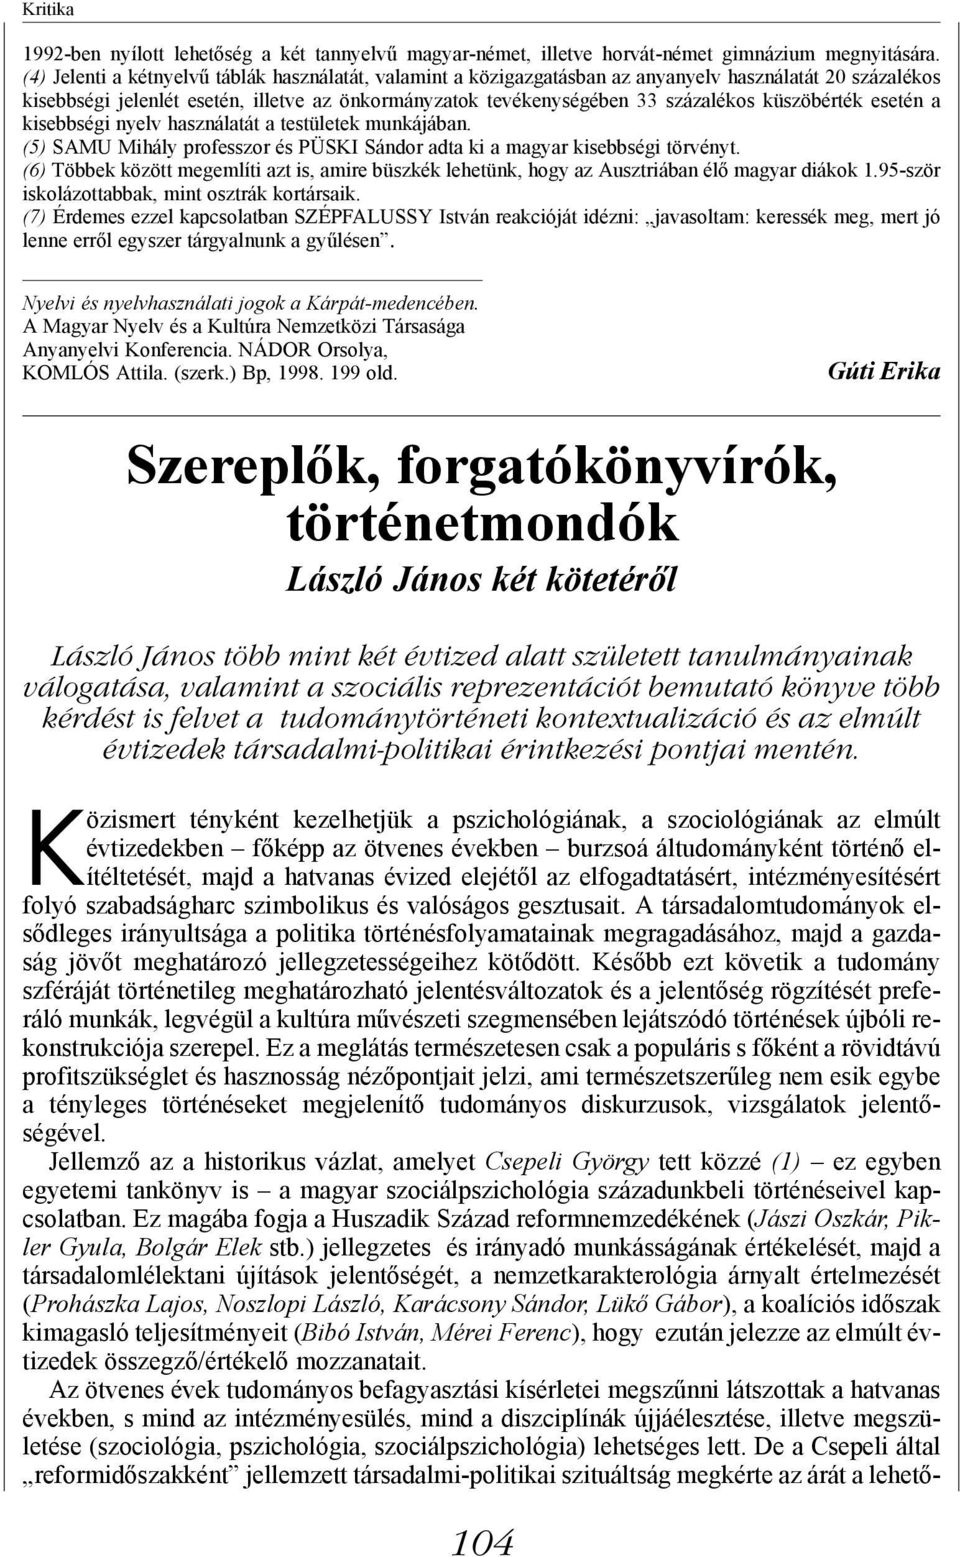 küszöbérték esetén a kisebbségi nyelv használatát a testületek munkájában. (5) SAMU Mihály professzor és PÜSKI Sándor adta ki a magyar kisebbségi törvényt.